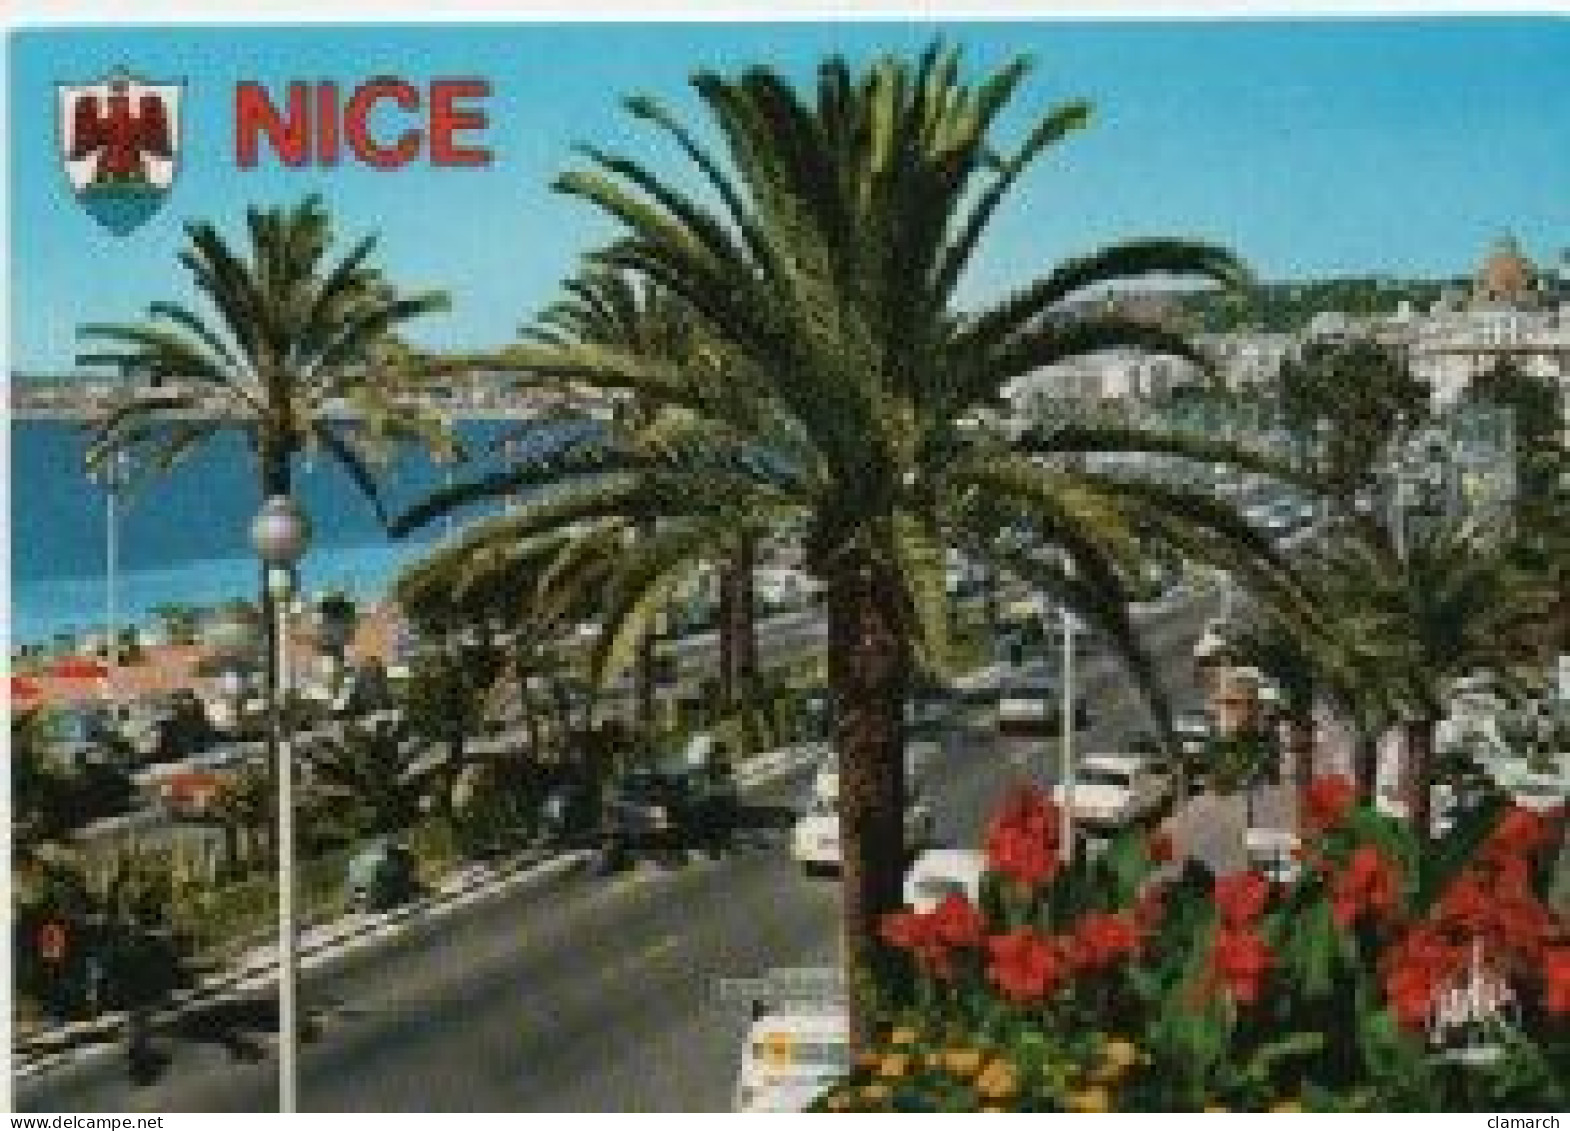 LOT de 100 Belles CPM de PROVENCE-COTE D'AZUR, Nice, Villefranche,Menton, Cannes, etc) frais d'envoi pour la F 8.06